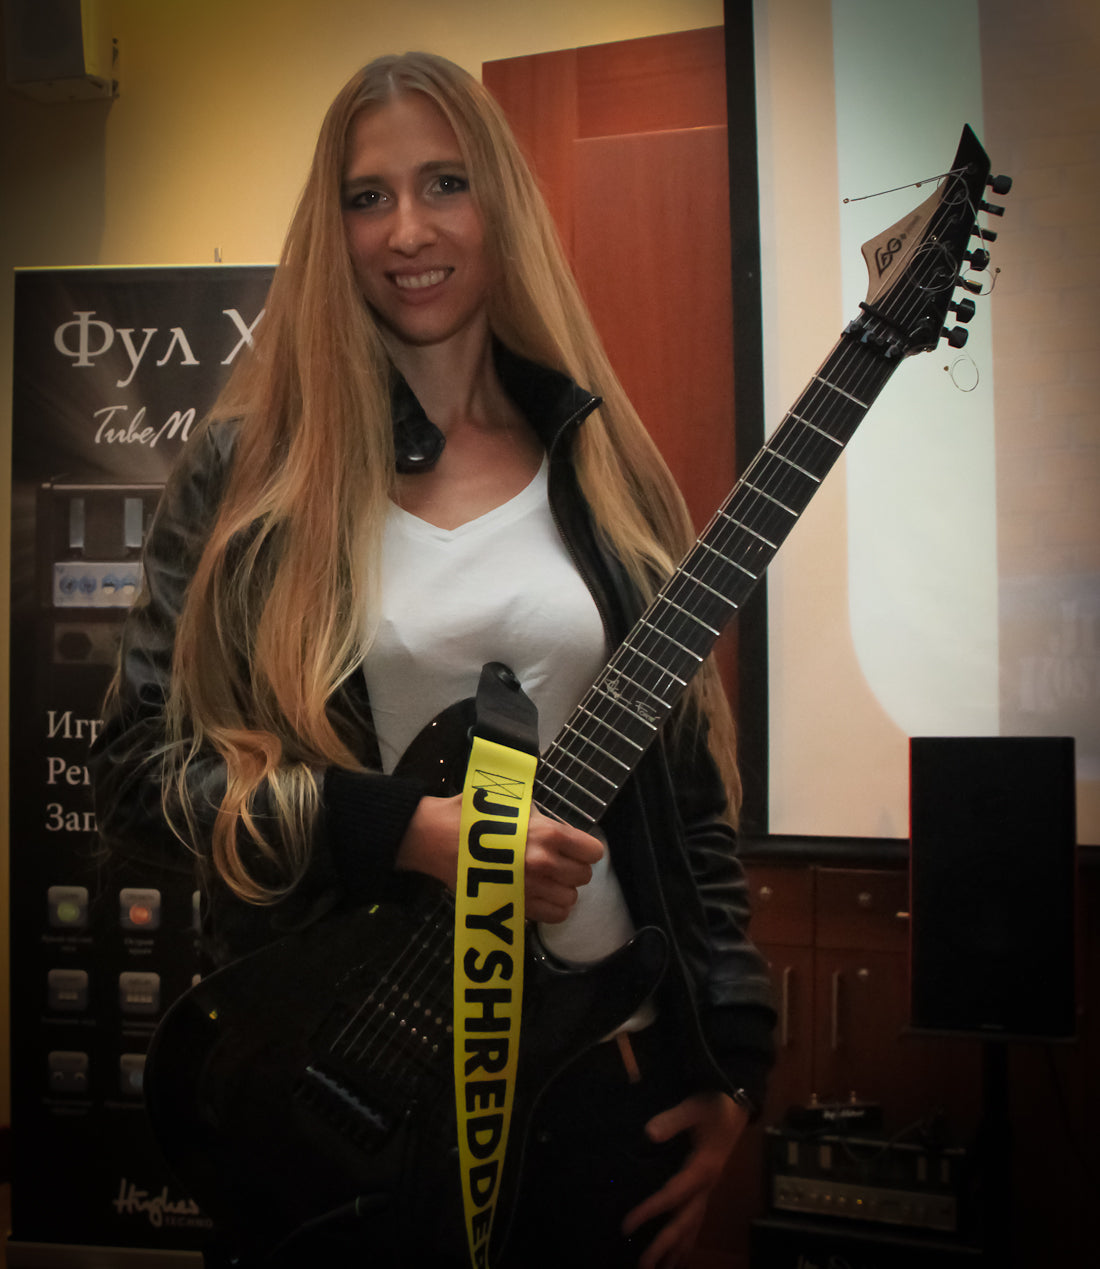 Guitar Strap review by Julia Kosterova